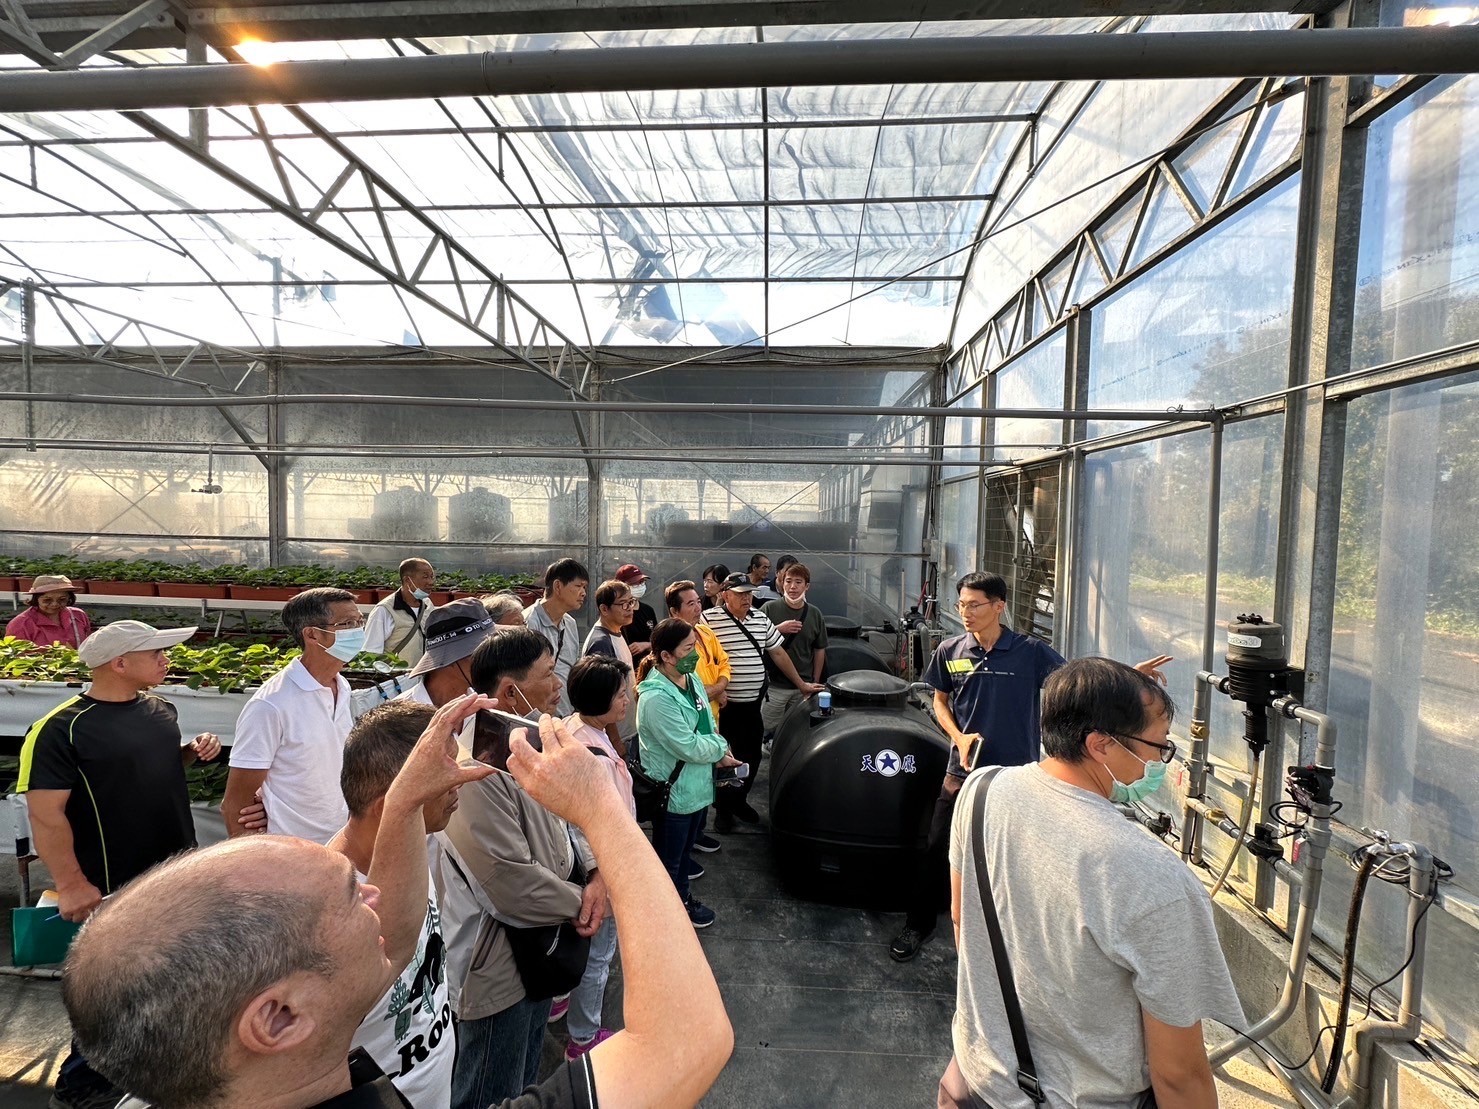 農民參訪學習溫室草苺自動化管理